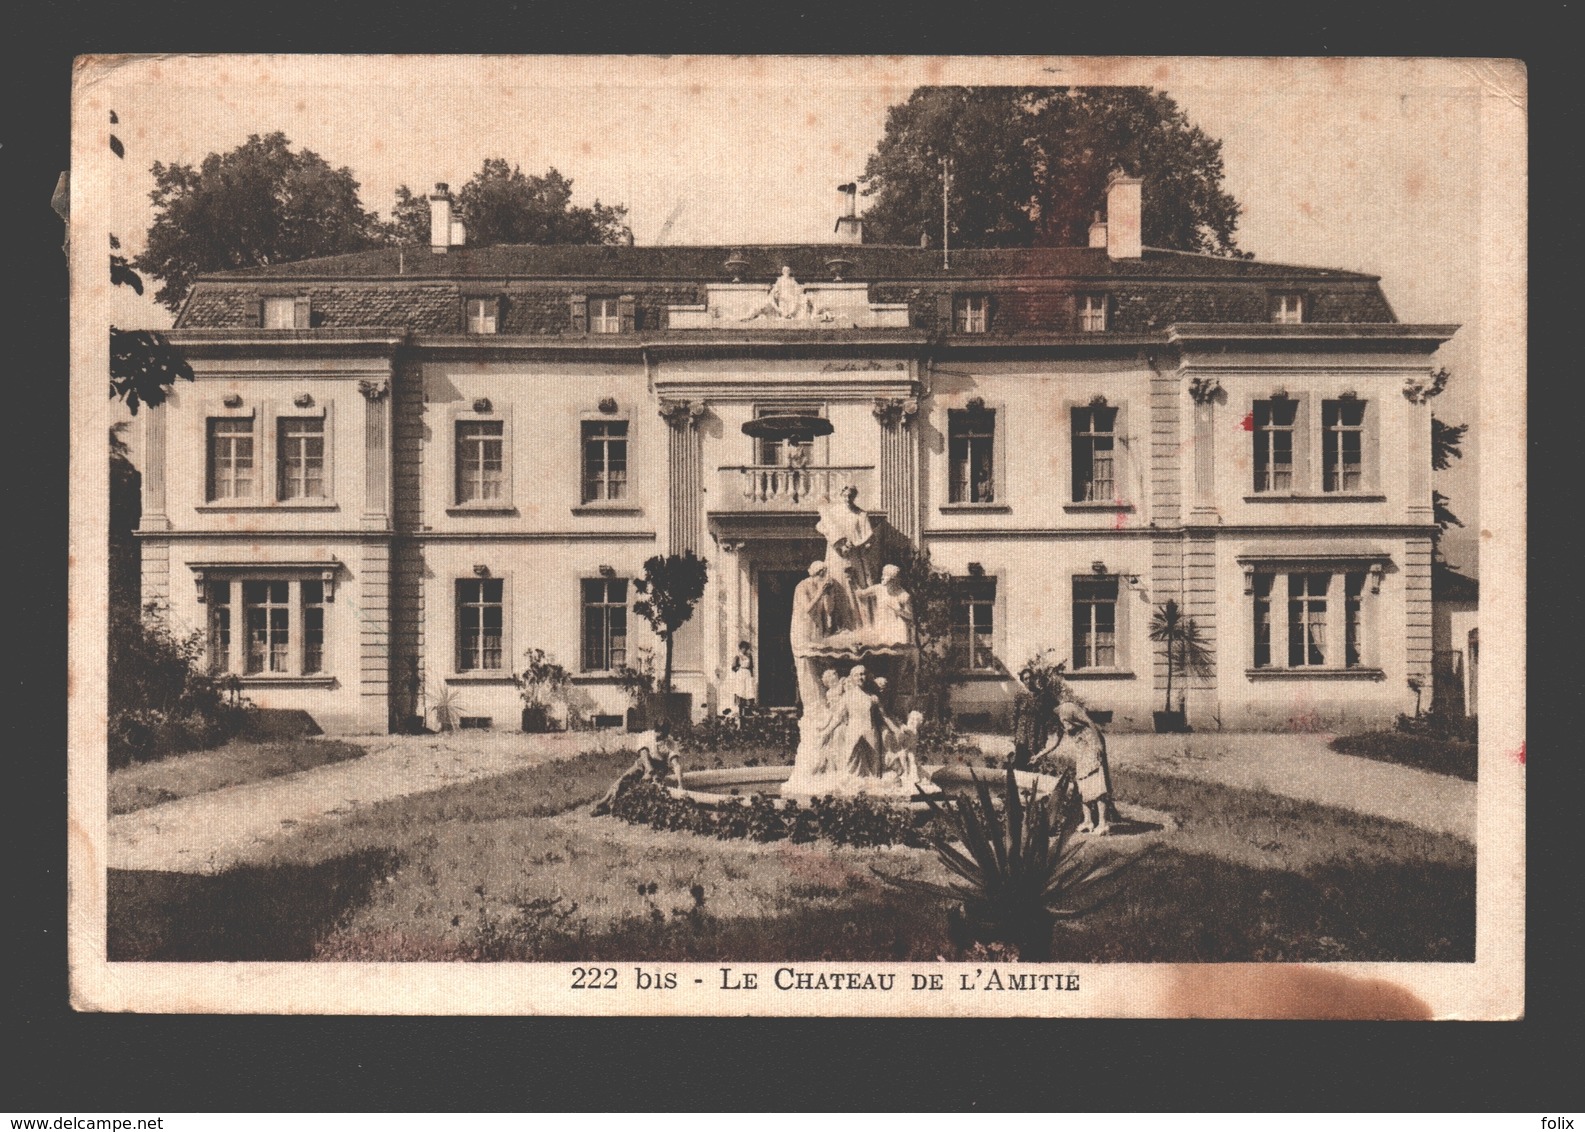 Cartigny - Le Château De L'Amitié - L'Ange De L'Eternel, Sté Philantrop. - Expedié De La Belgique - Cartigny